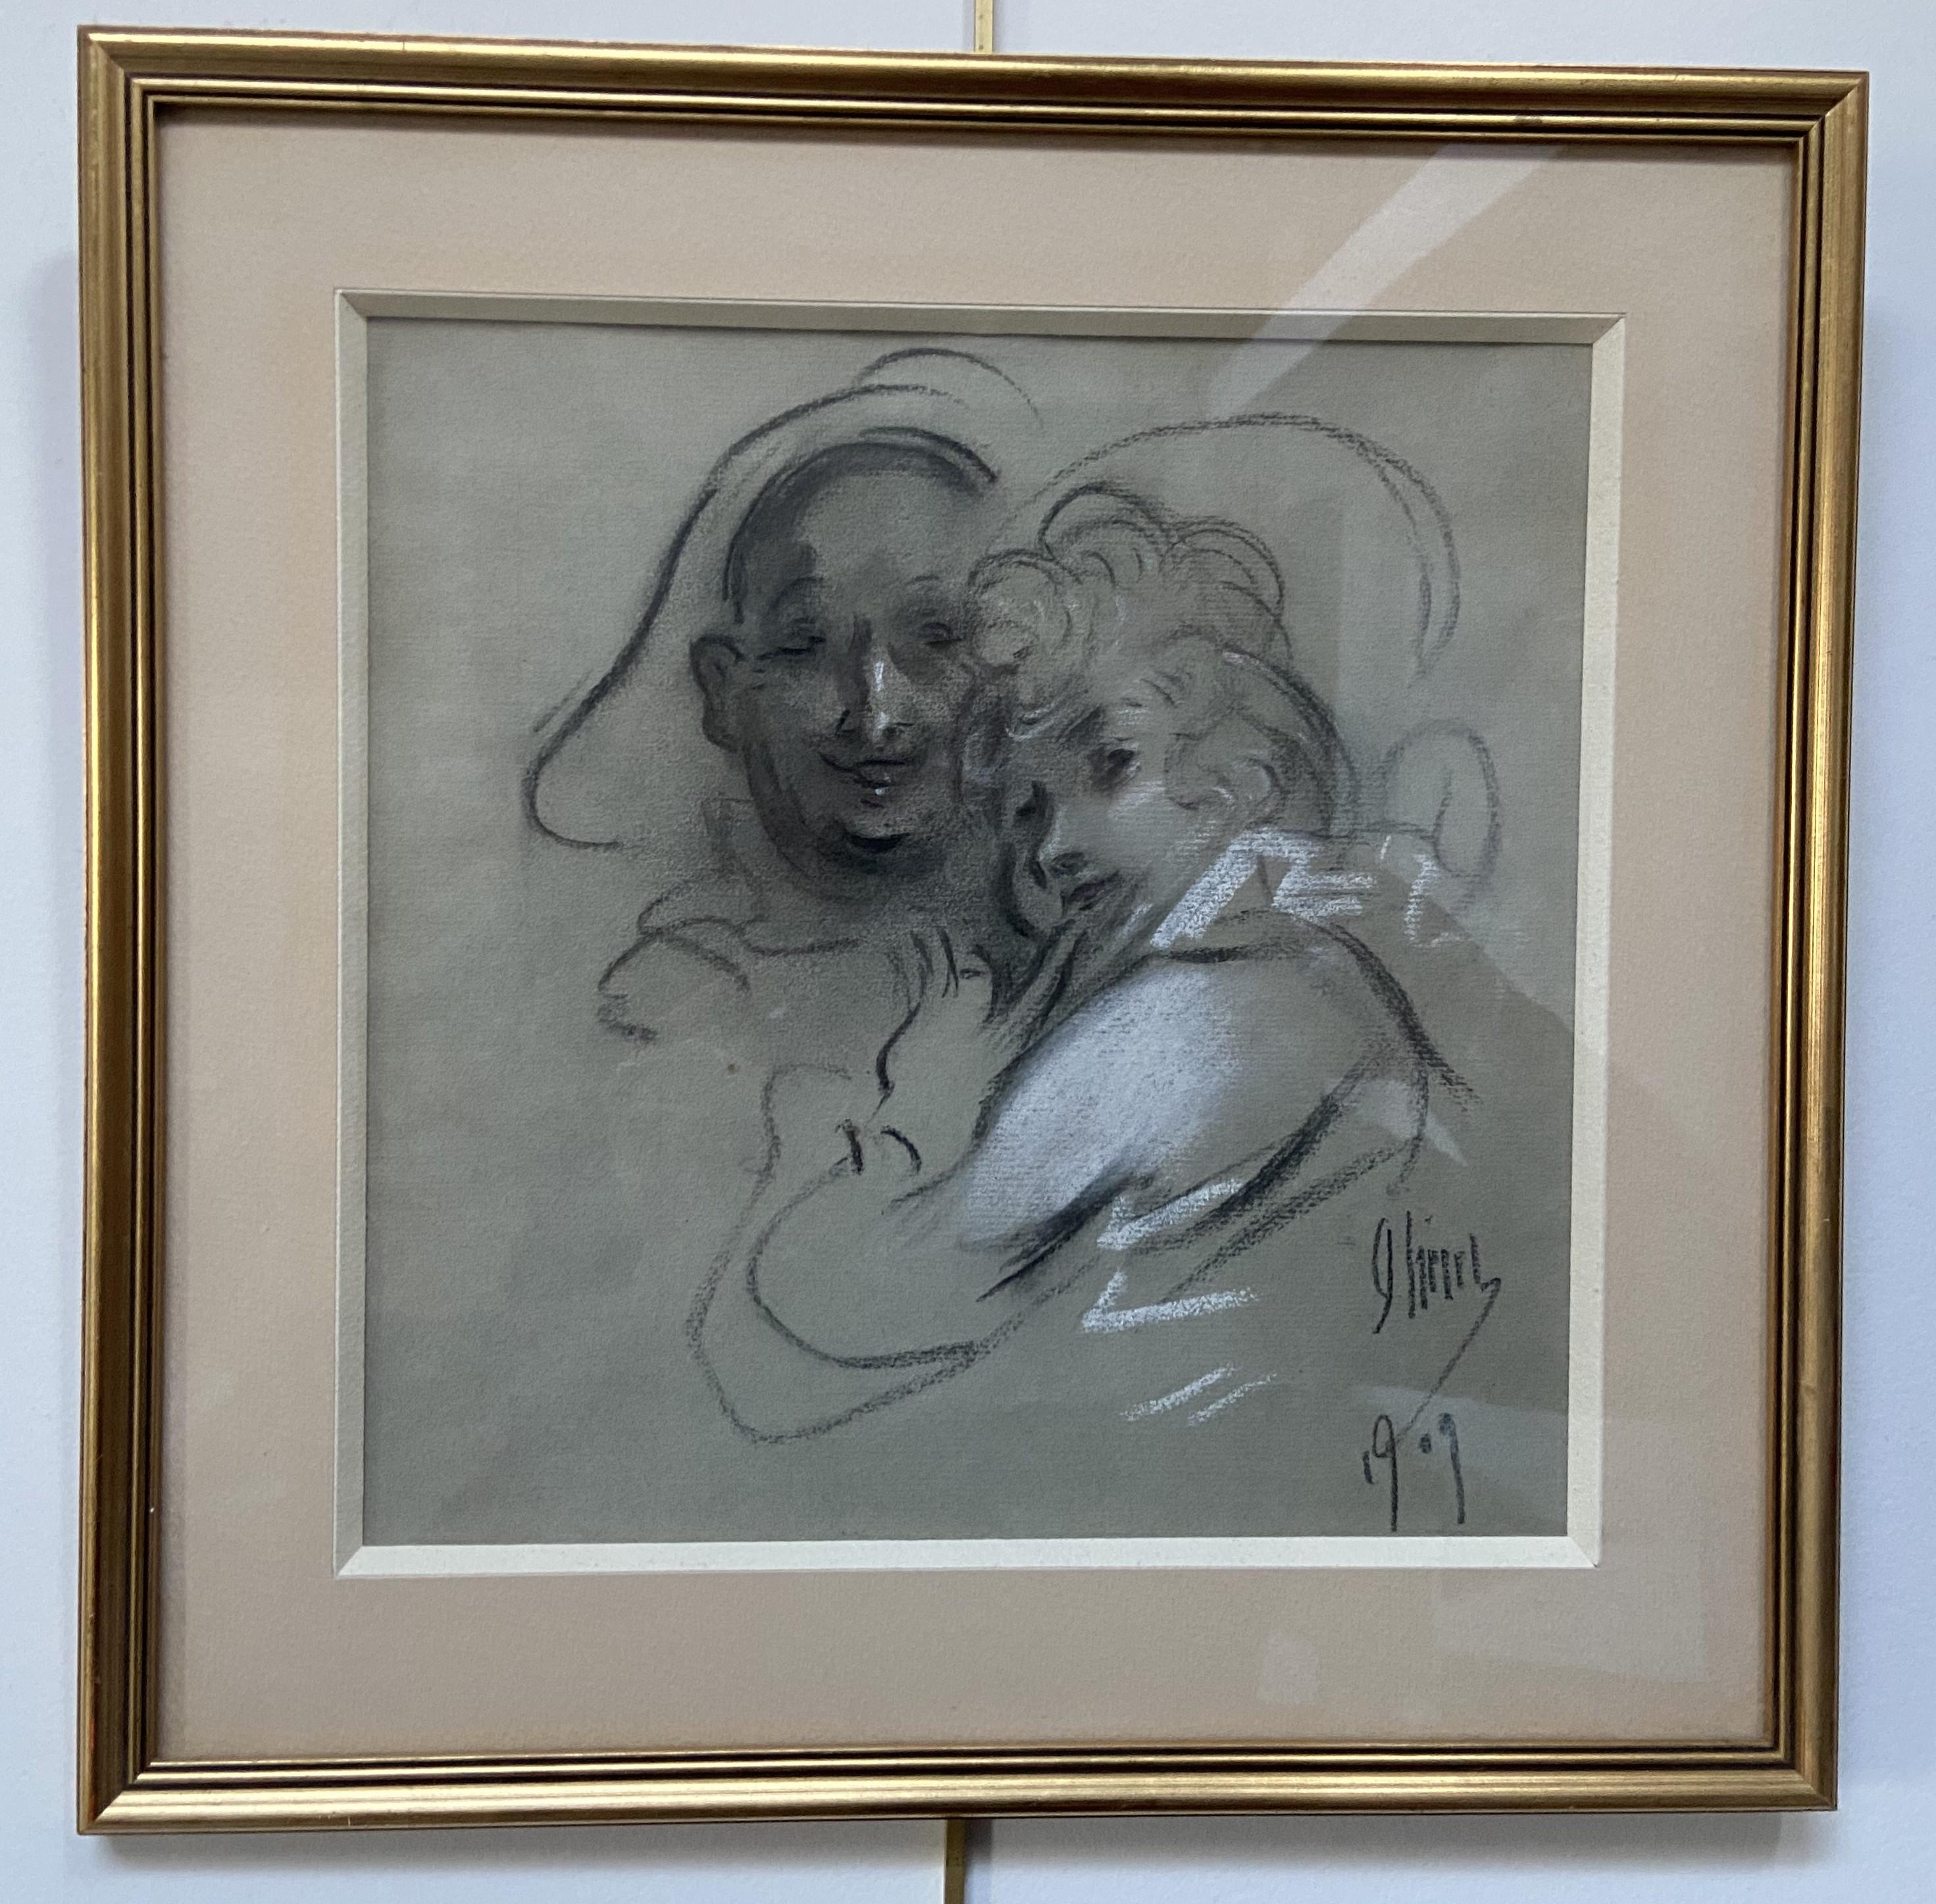 Jules Cheret (1836-1932) 
Ein Paar, 1909
signiert und datiert unten rechts
Holzkohle  und Erhöhungen aus weißer Kreide
23 x 23 cm
Gerahmt unter Glas : 33,8 x 33,8 cm

Dieses Werk ist sehr repräsentativ für die Kunst von Jules Chéret, voller Zartheit